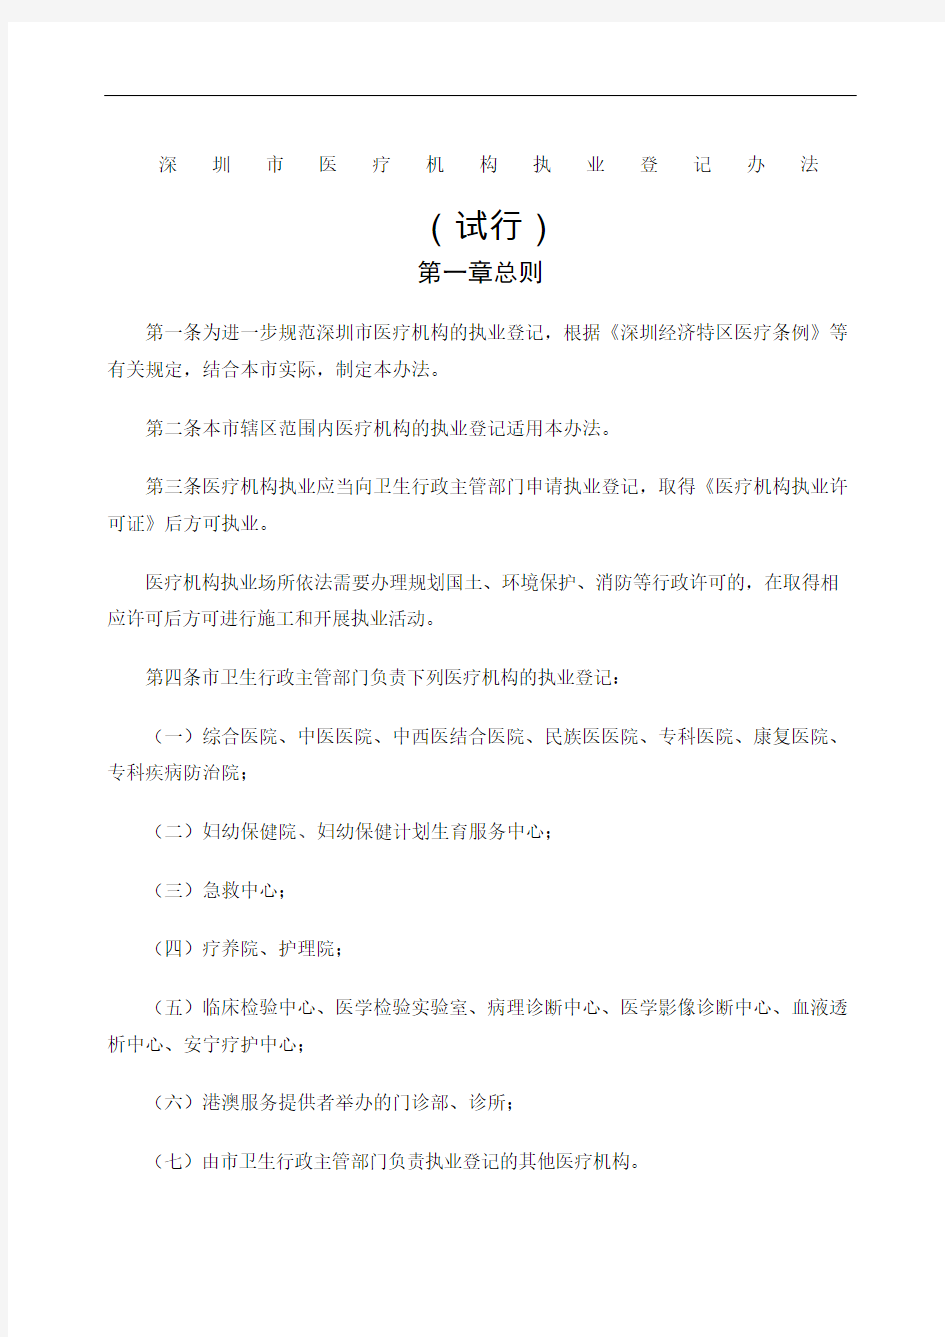 深圳市医疗机构执业登记办法试行修订版